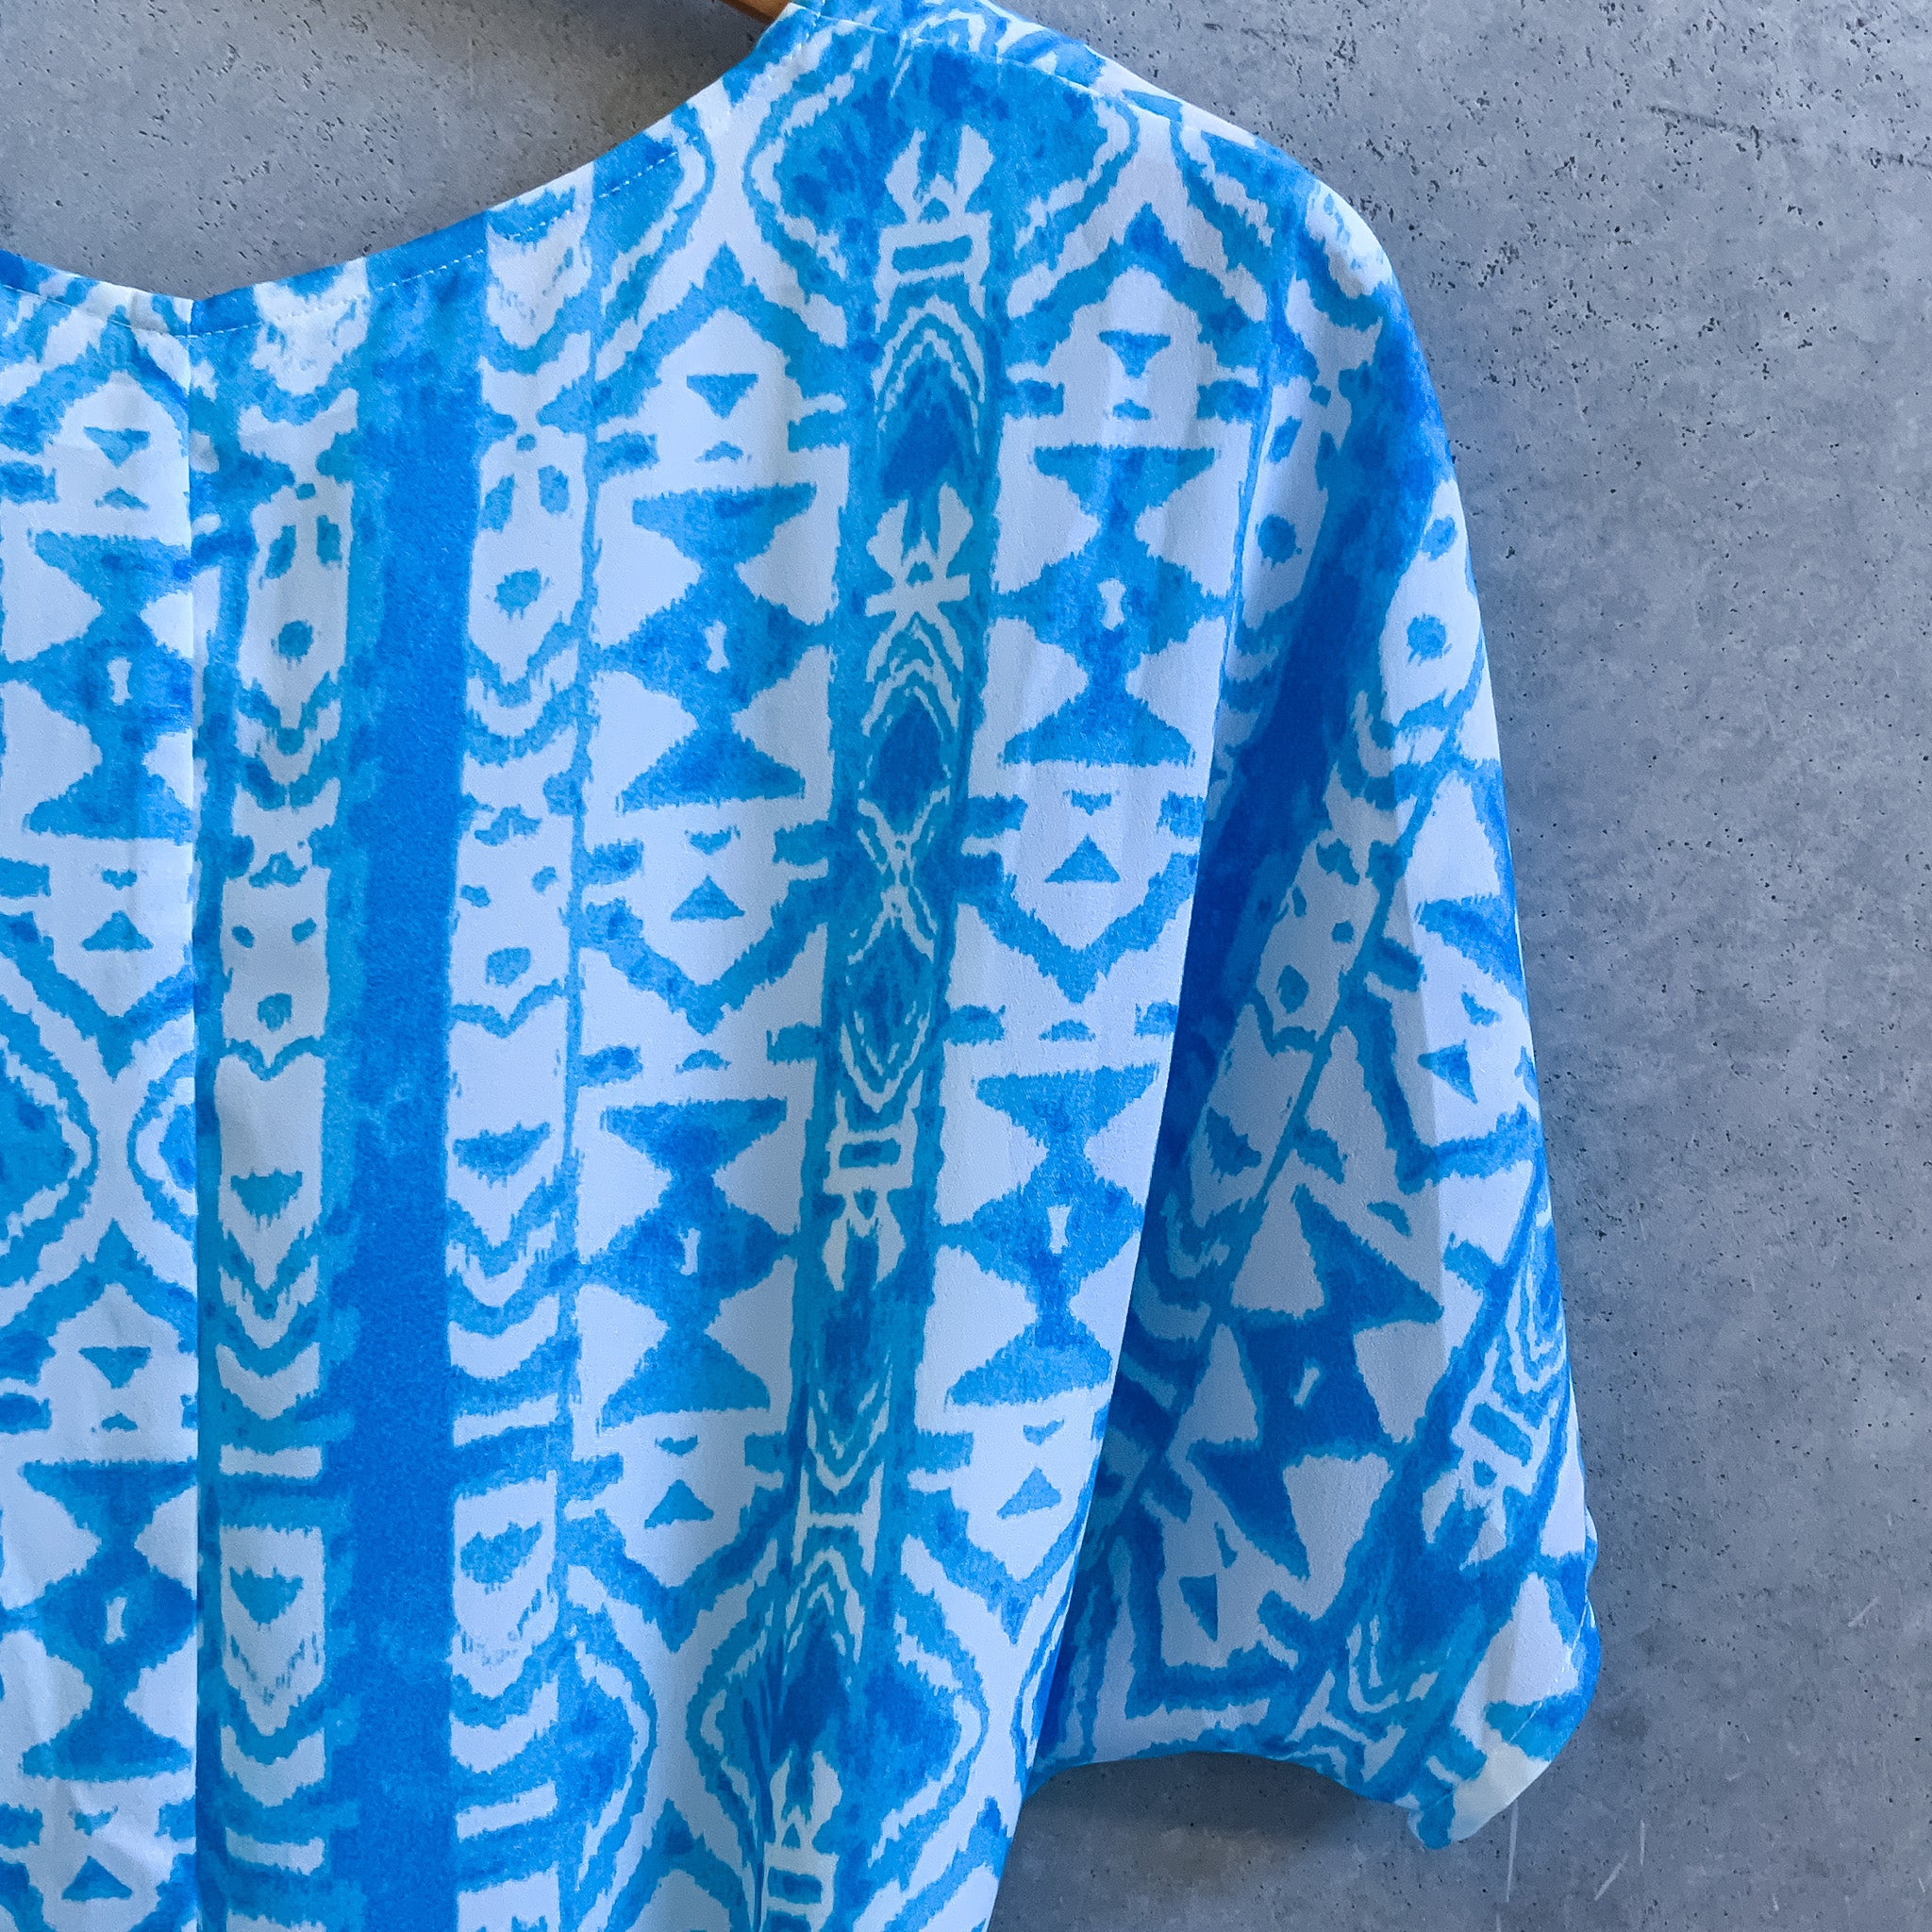 LUCCA Aztec Print Tie Waist Summer Shift Dress - Size XS